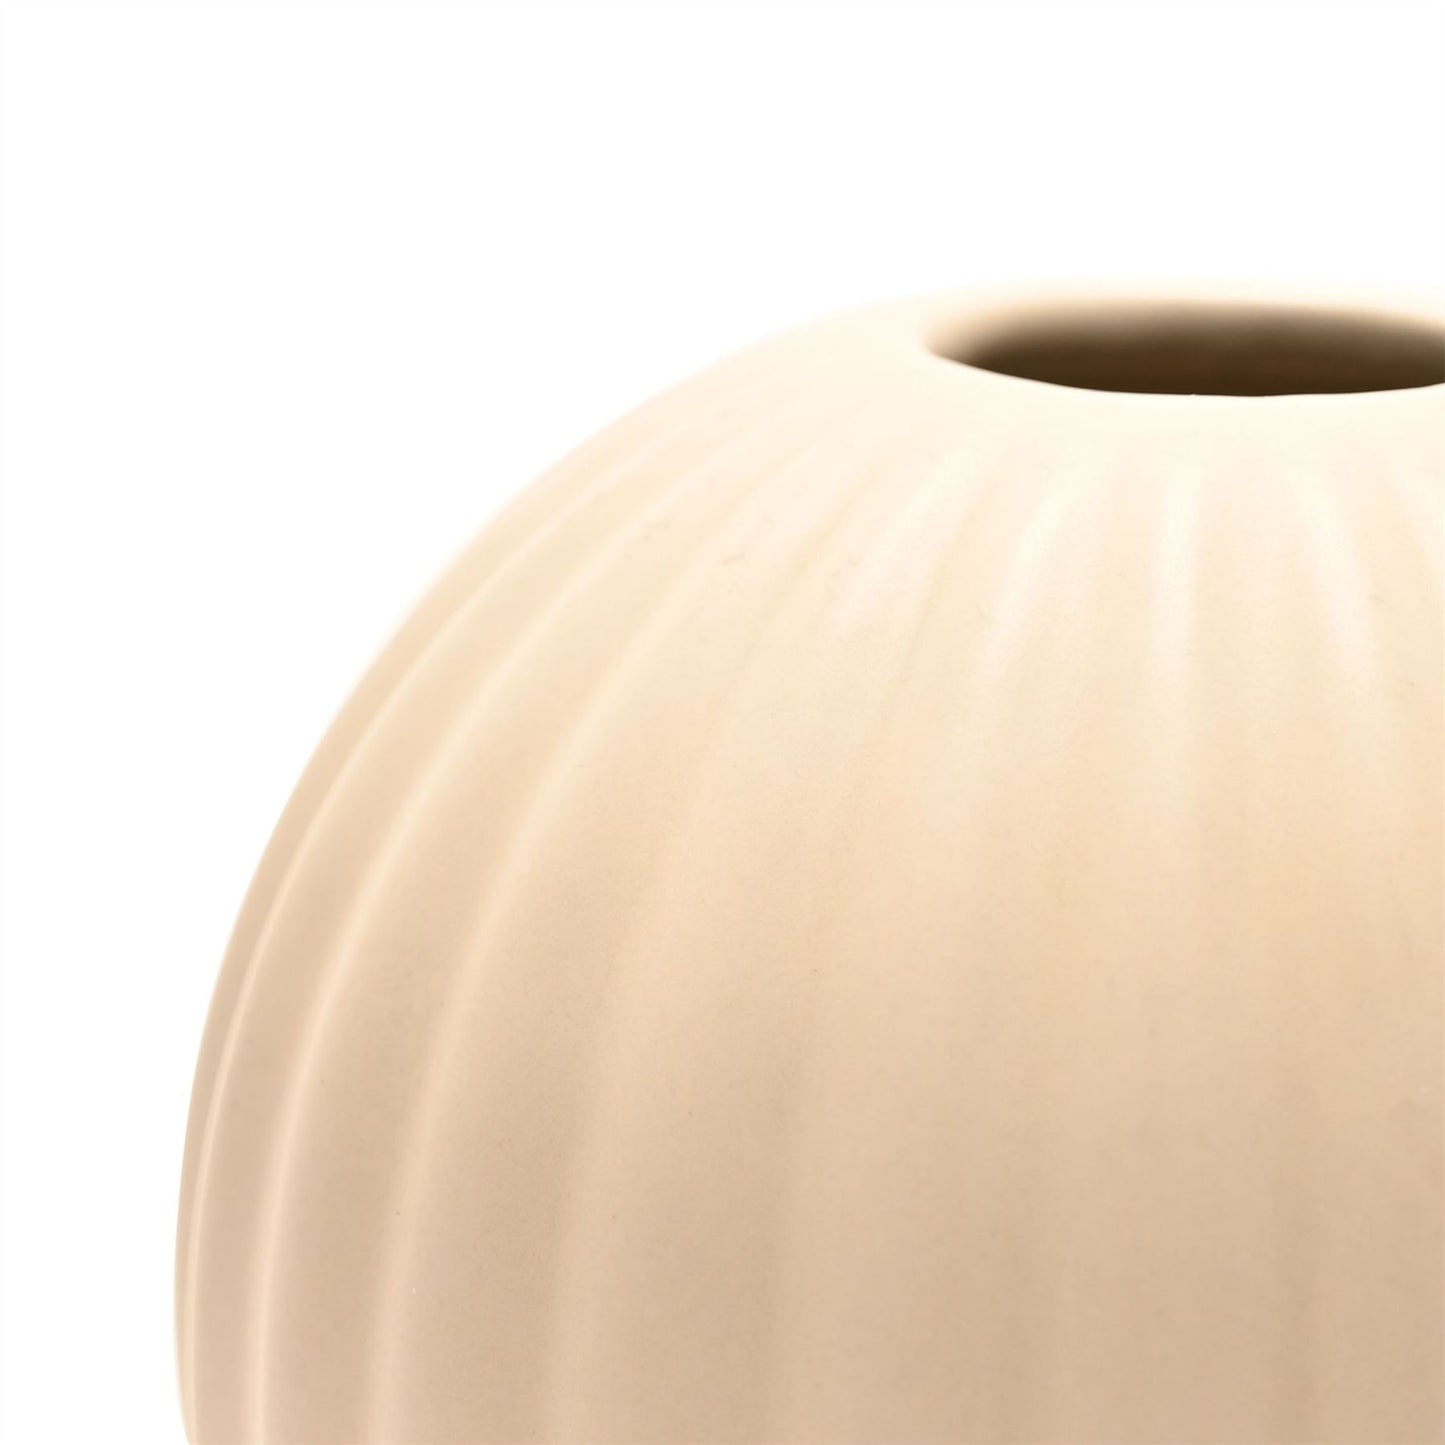 Hestia Cream Ceramic Round Style Vase